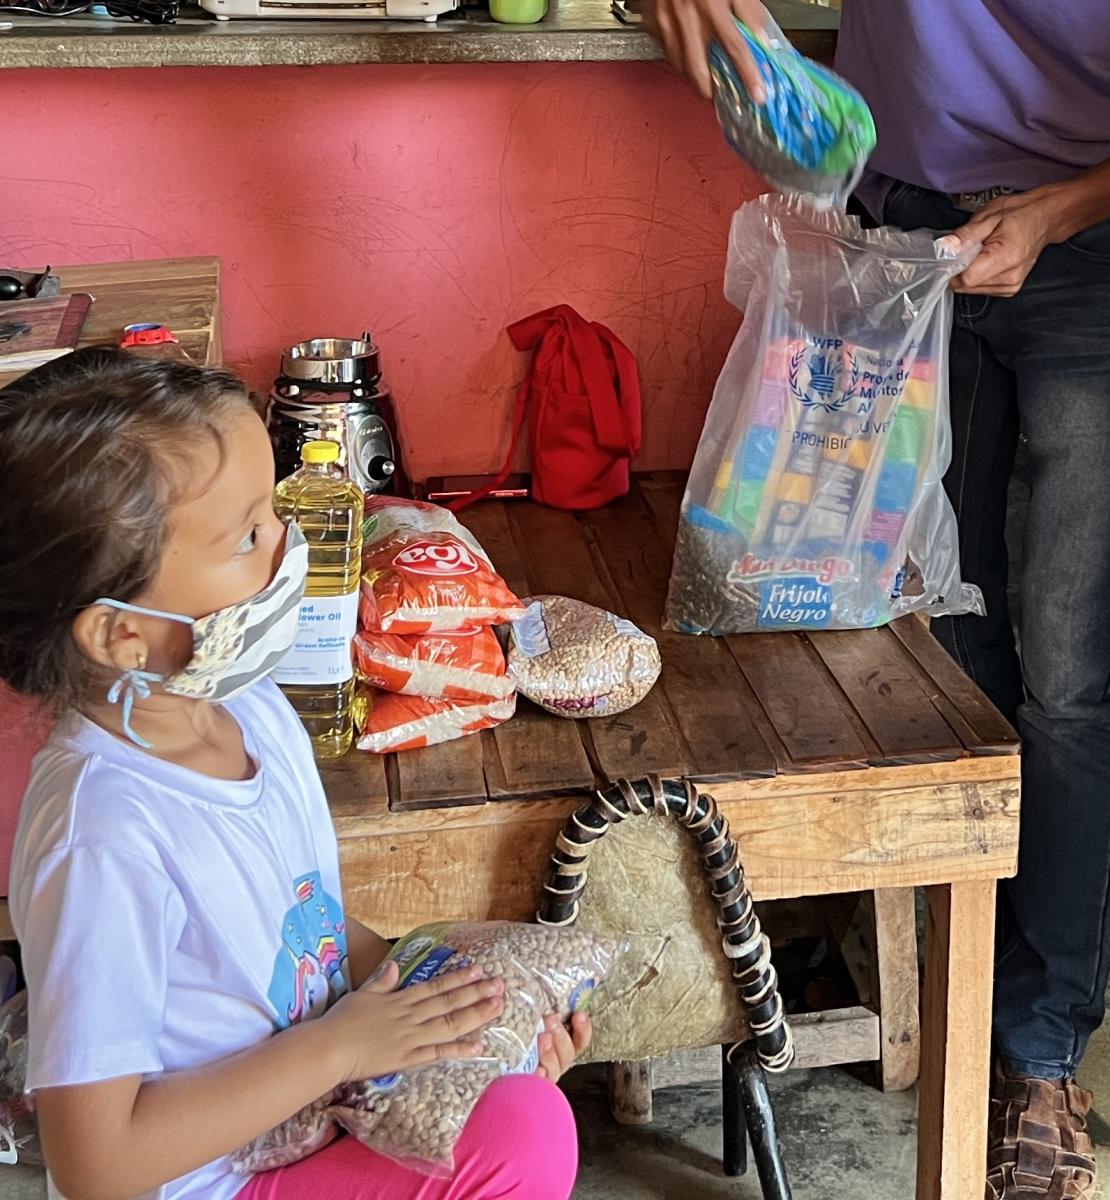 Una niña pequeña con tapaboca sostiene una bolsa de granos mientras ve a dos adultos, y en el fondo se ven una mesa con alimentos encima.